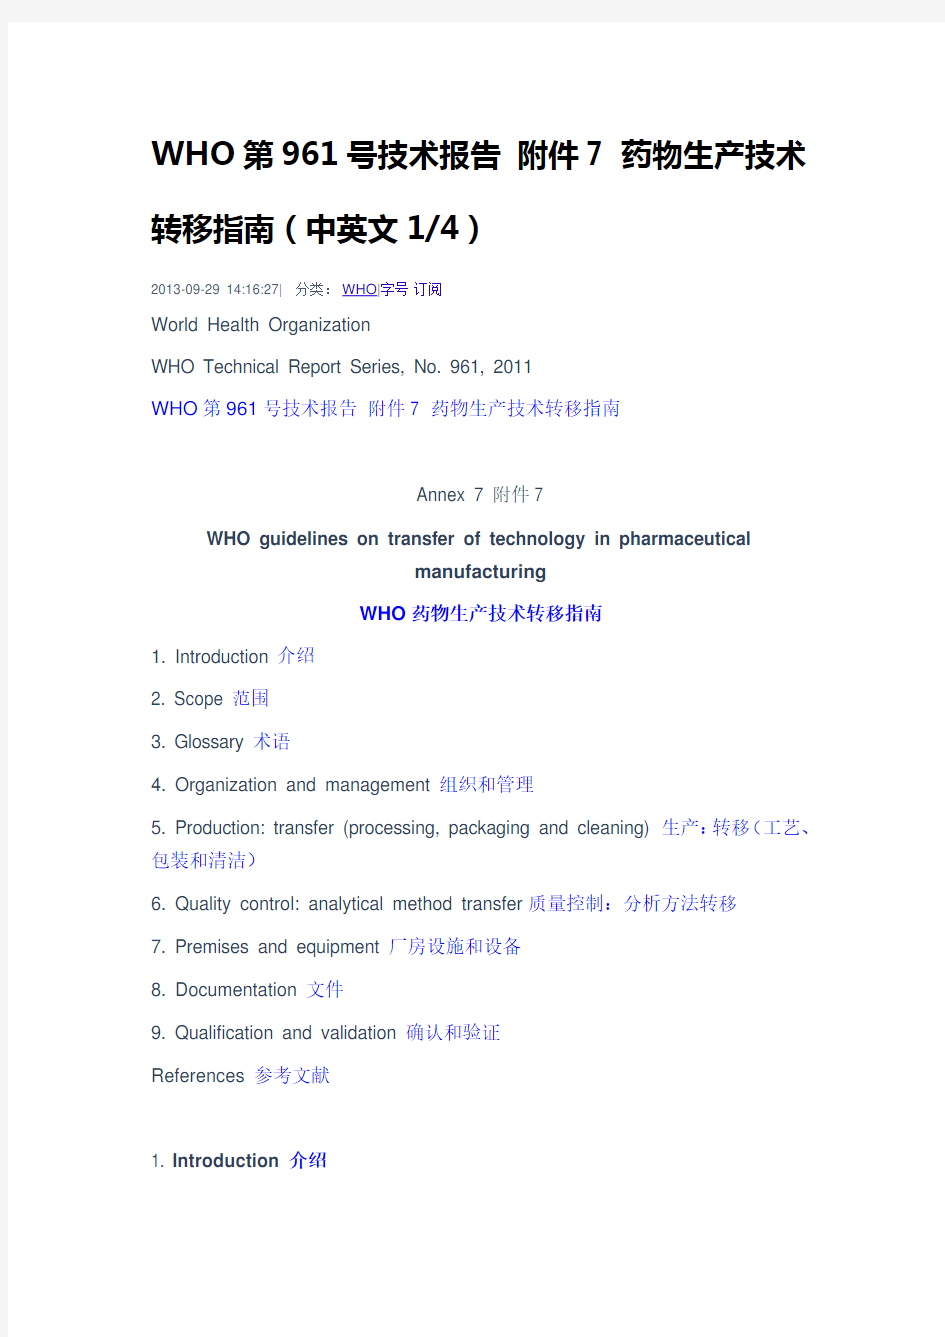 WHO第961号技术报告 附件7 药物生产技术转移指南(中英文)